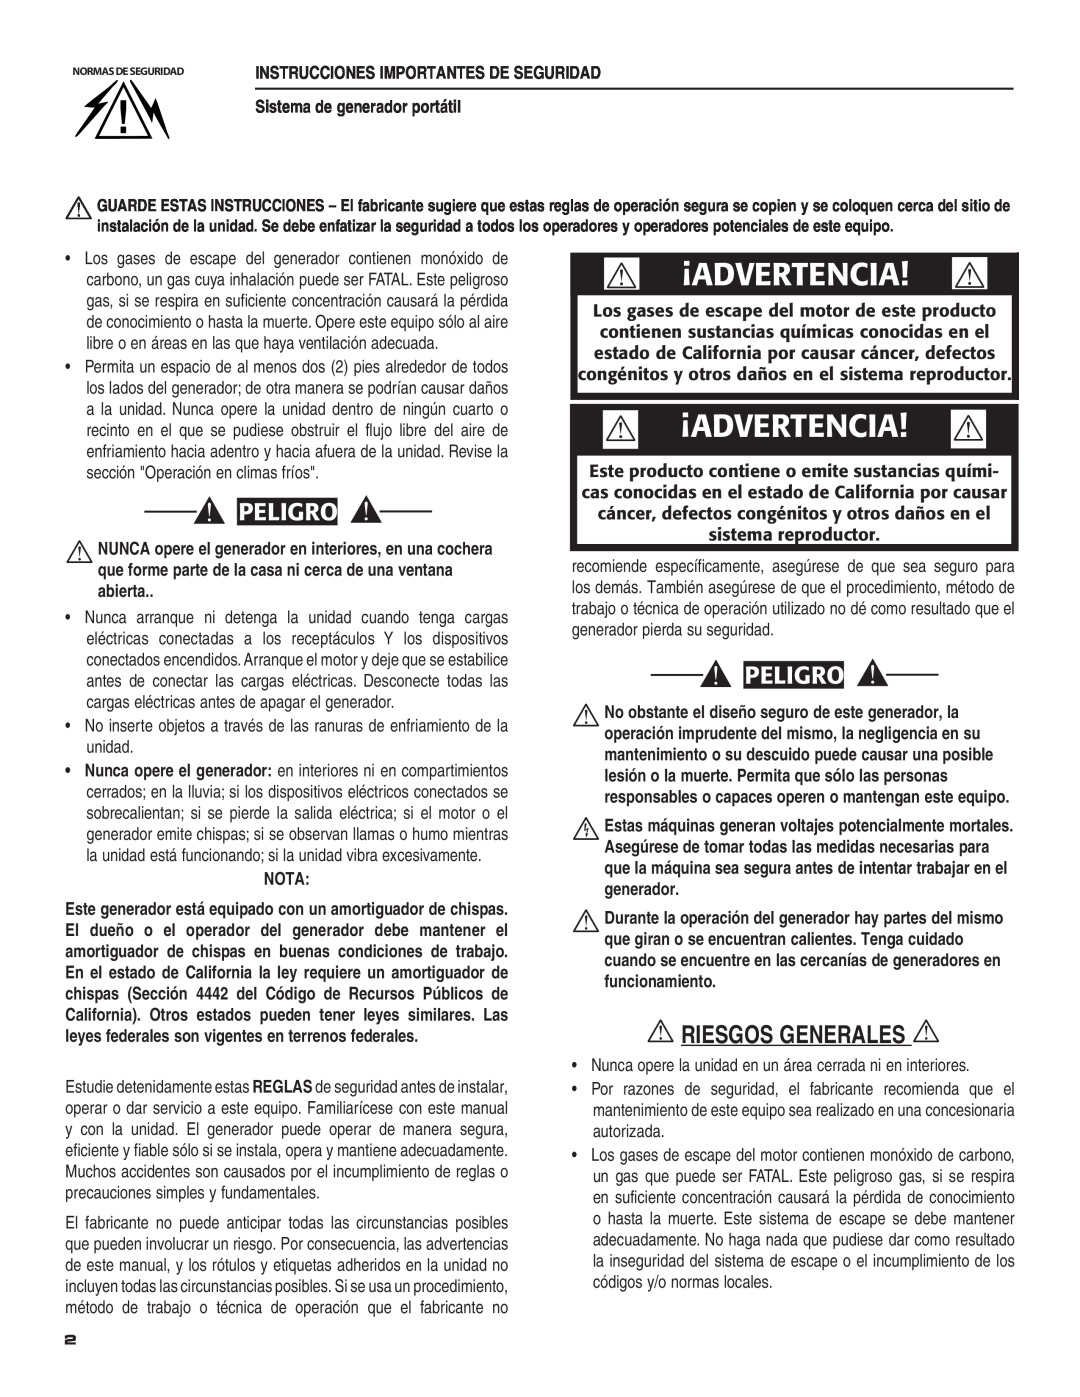 Guardian Technologies 004583-0 owner manual  Riesgos Generales , ¡Advertencia, 0%,2, Sistema de generador portátil, Nota 